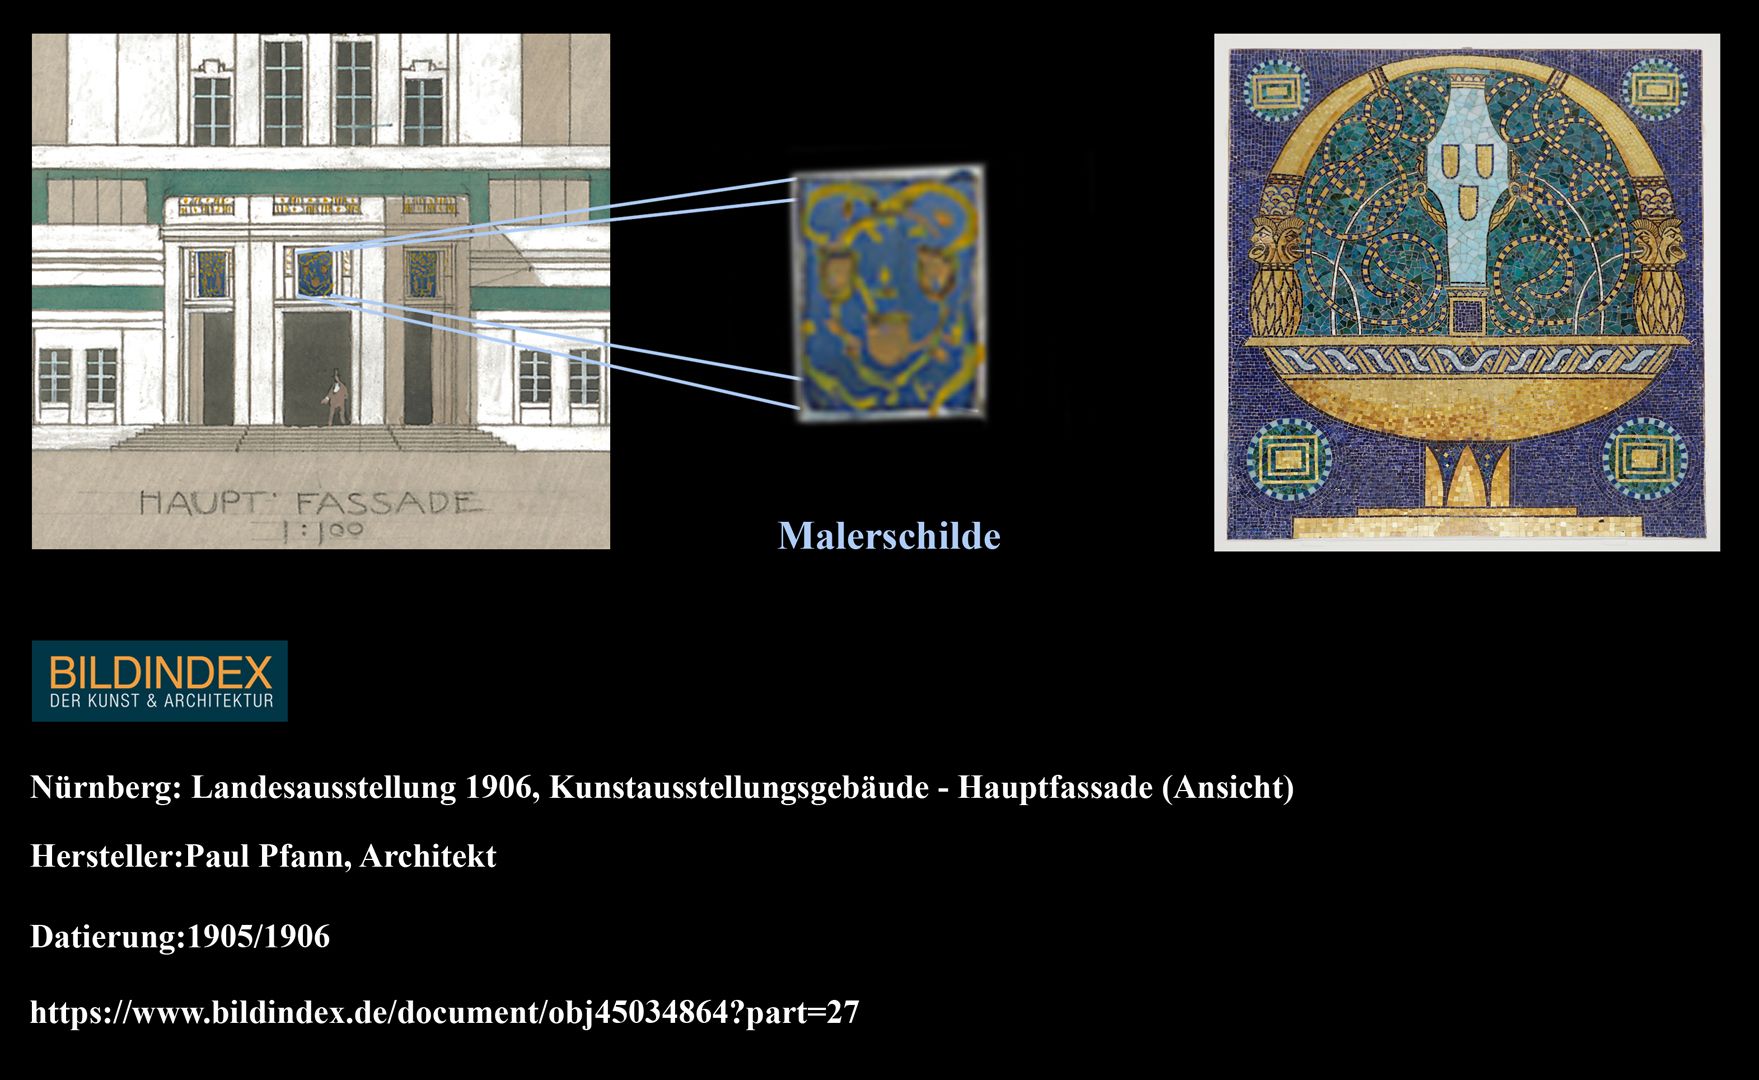 Brunnen mit Malerschilden Kolorierter Entwurf, auf dem die drei Malerschilde erkennebar sind, wie sie auch auf dem Mosaik zu finden sind